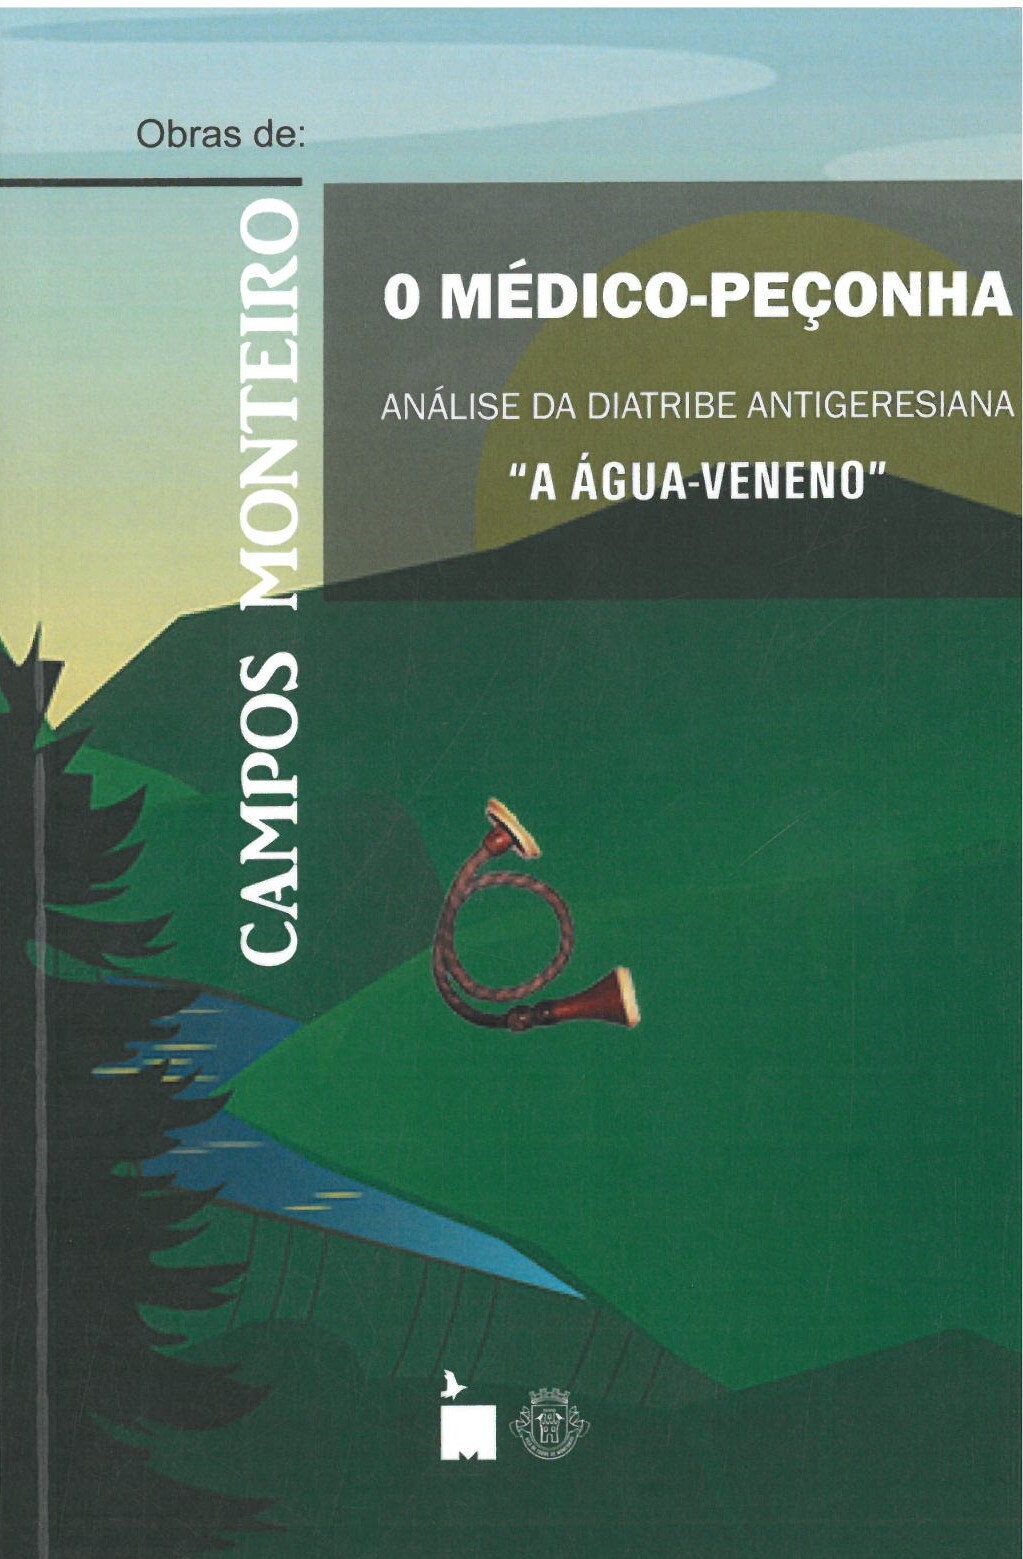 Apresentação do livro “O Médico-Peçonha” de Campos Monteiro 